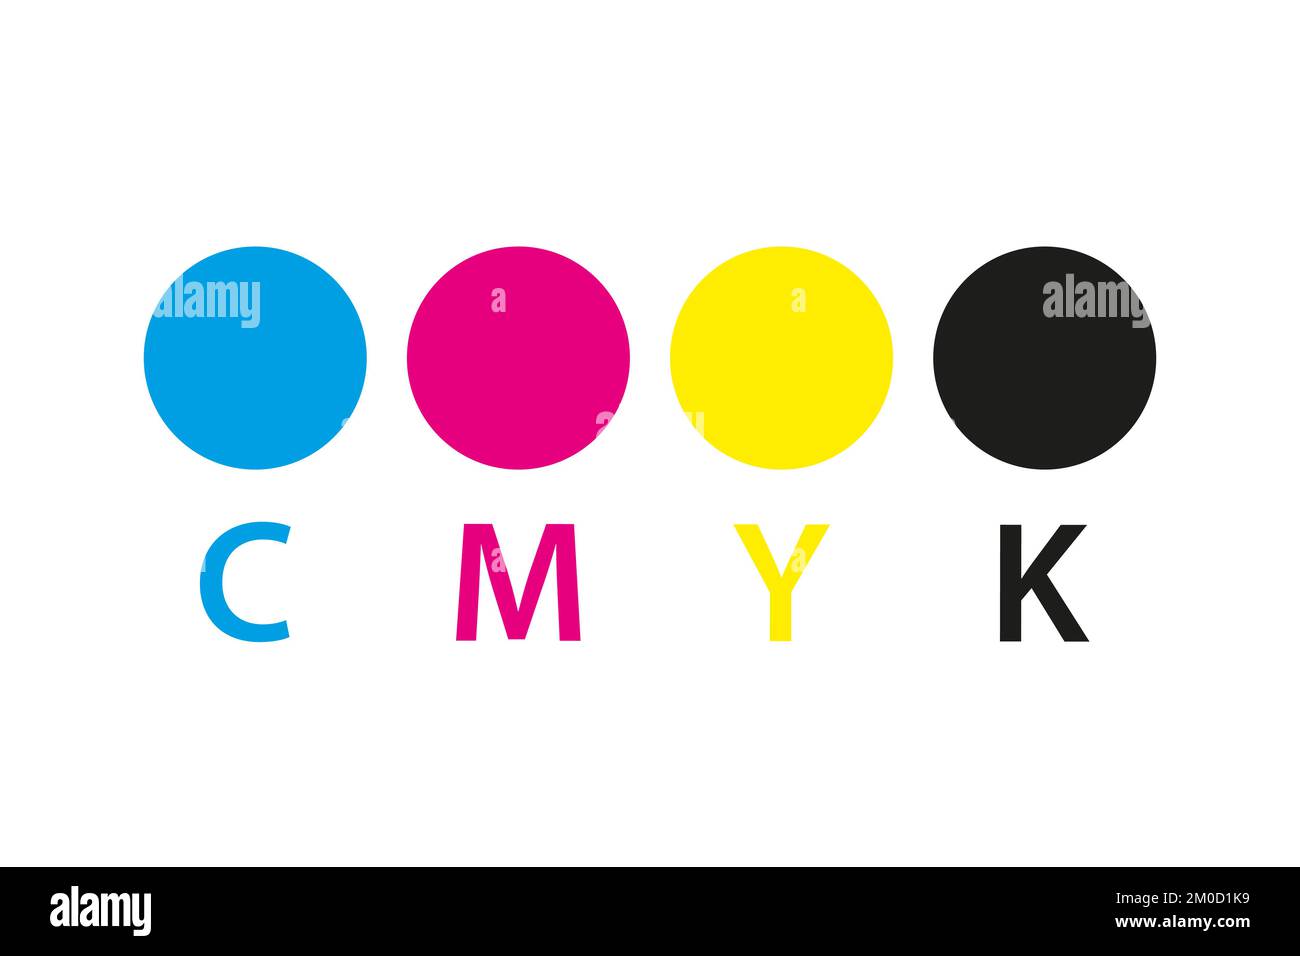 Icona di stampa CMYK. Quattro cerchi nei simboli dei colori cmyk. Ciano, magenta, giallo, tasto, rotelle nere isolate su sfondo bianco Illustrazione Vettoriale